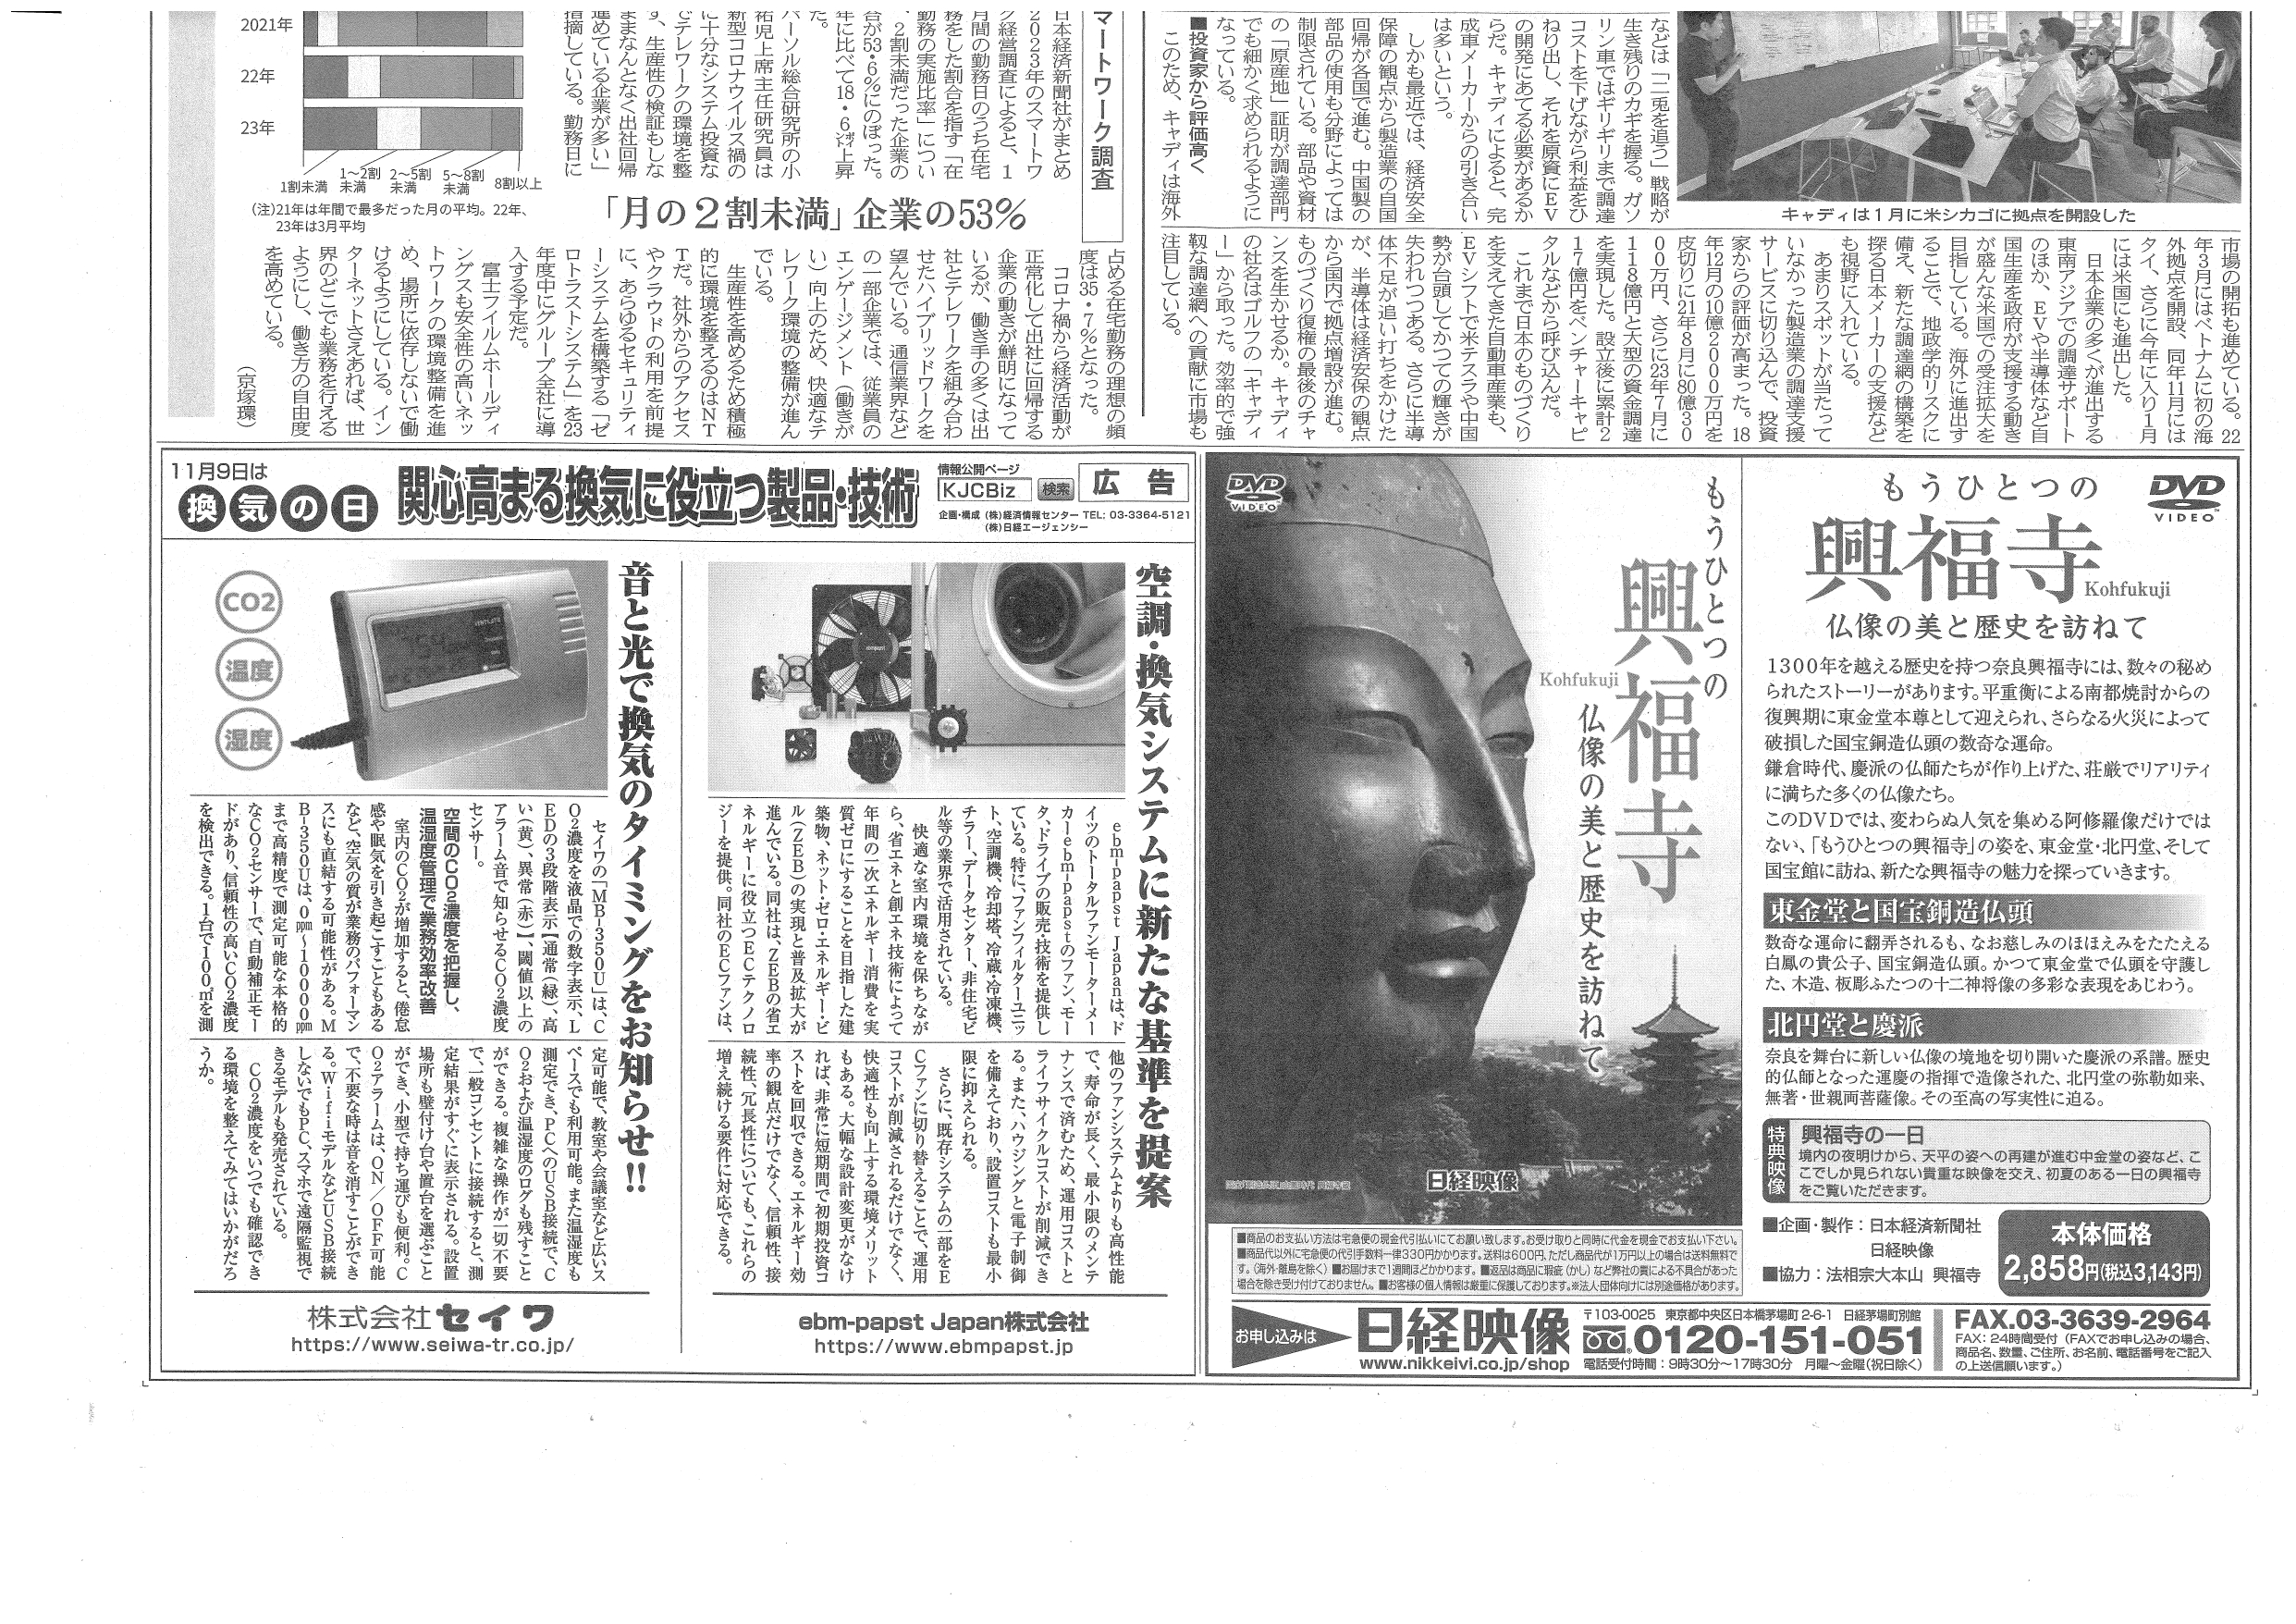 日経産業新聞11月9日「換気」_page-0001.jpg